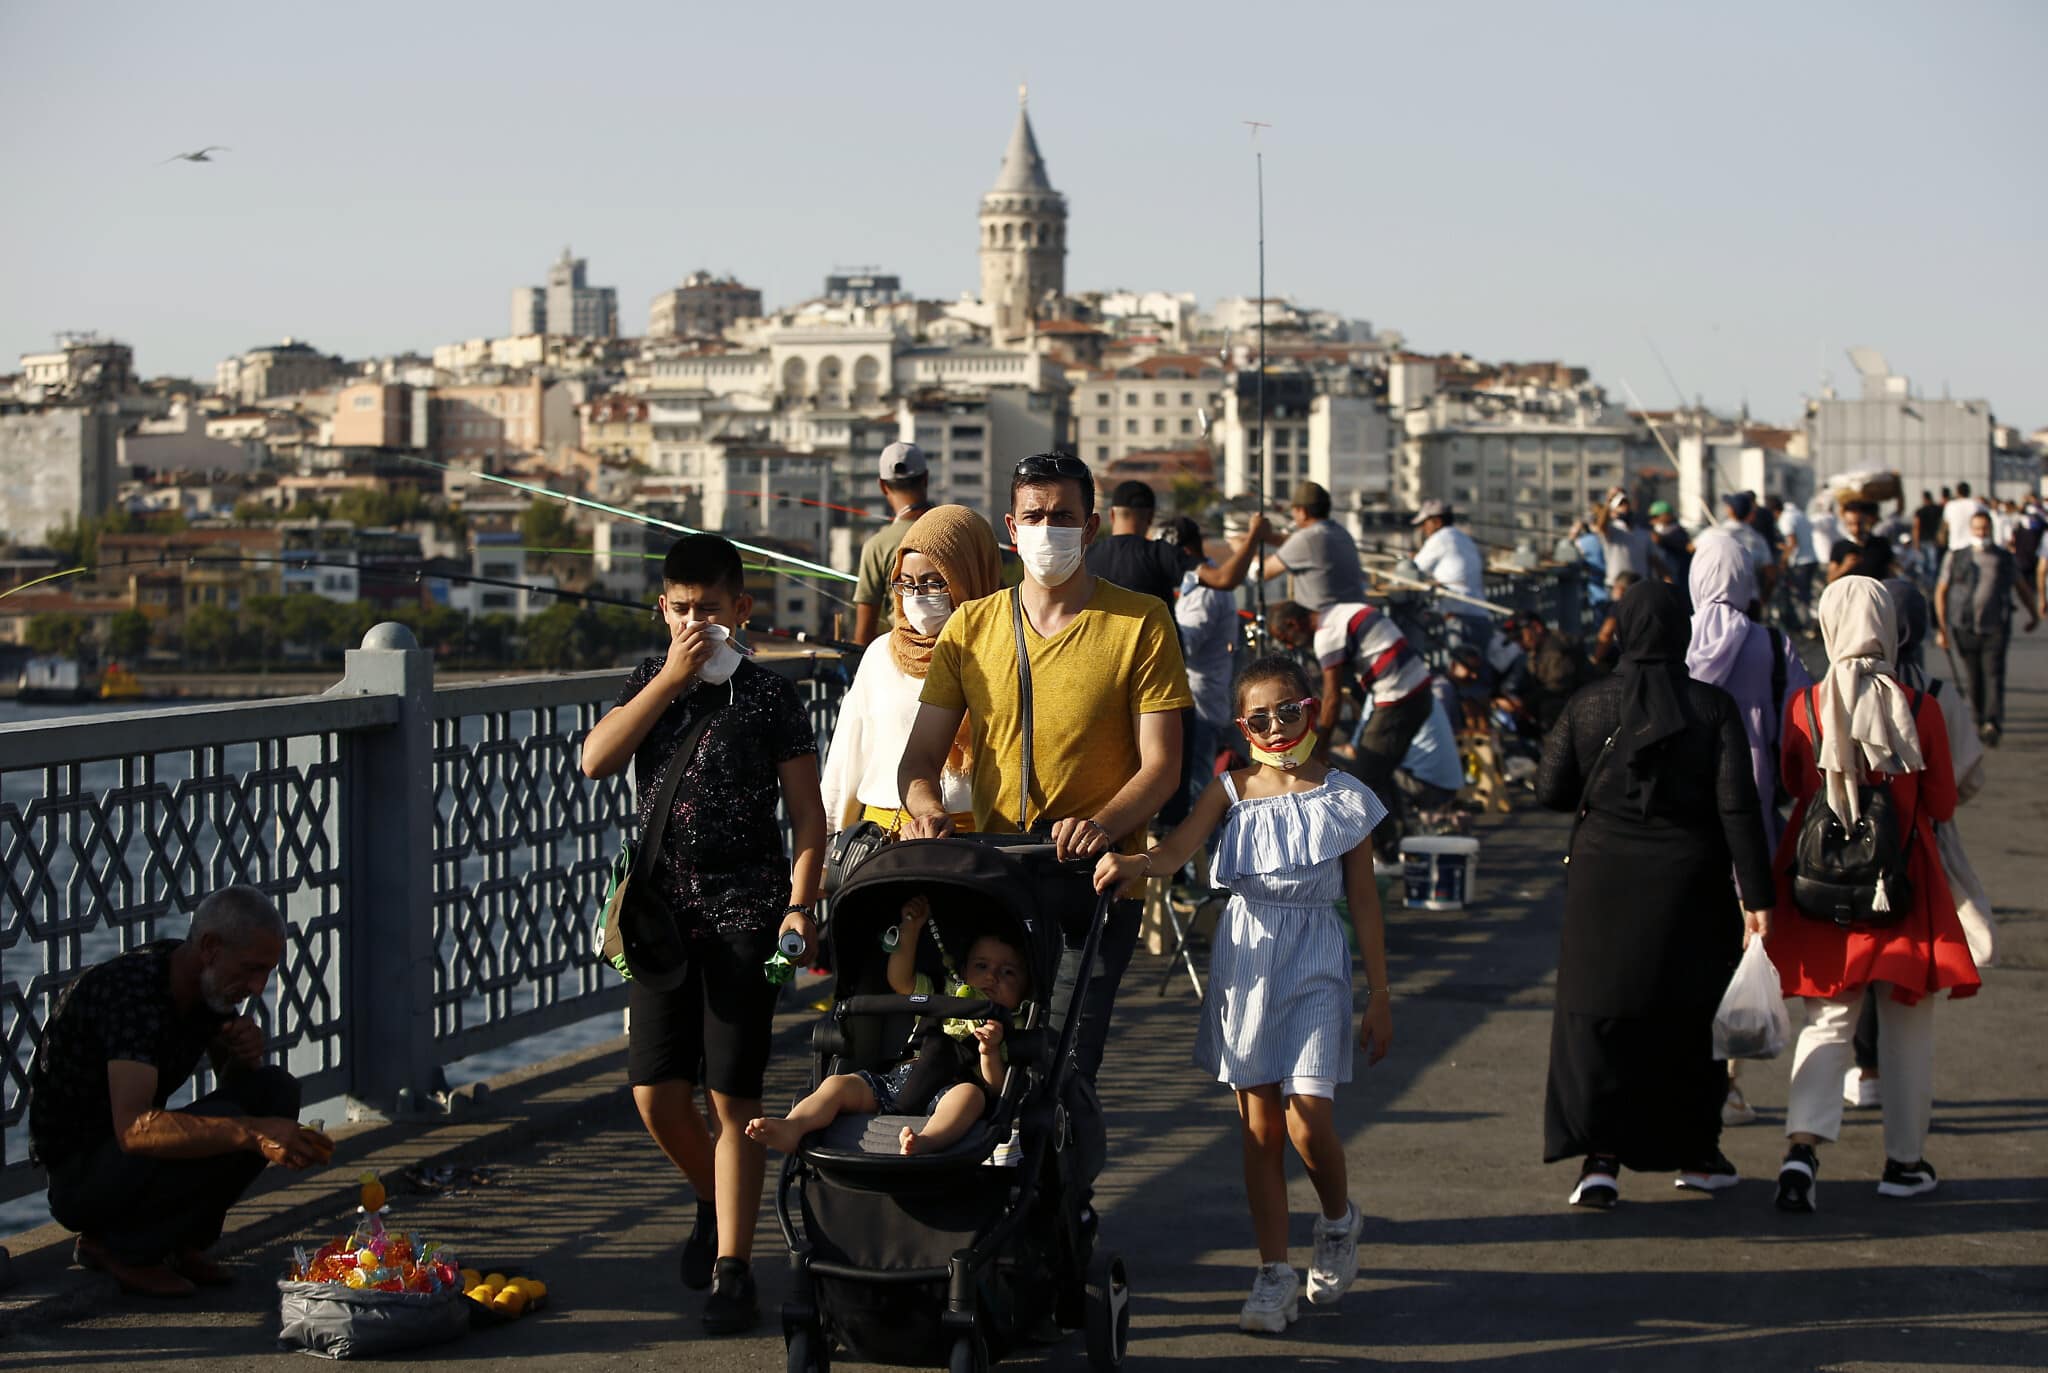 גשר גלאטה באיסטנבול בעידן הקורונה, 7 באוגוסט 2020 (צילום: AP Photo/Emrah Gurel)